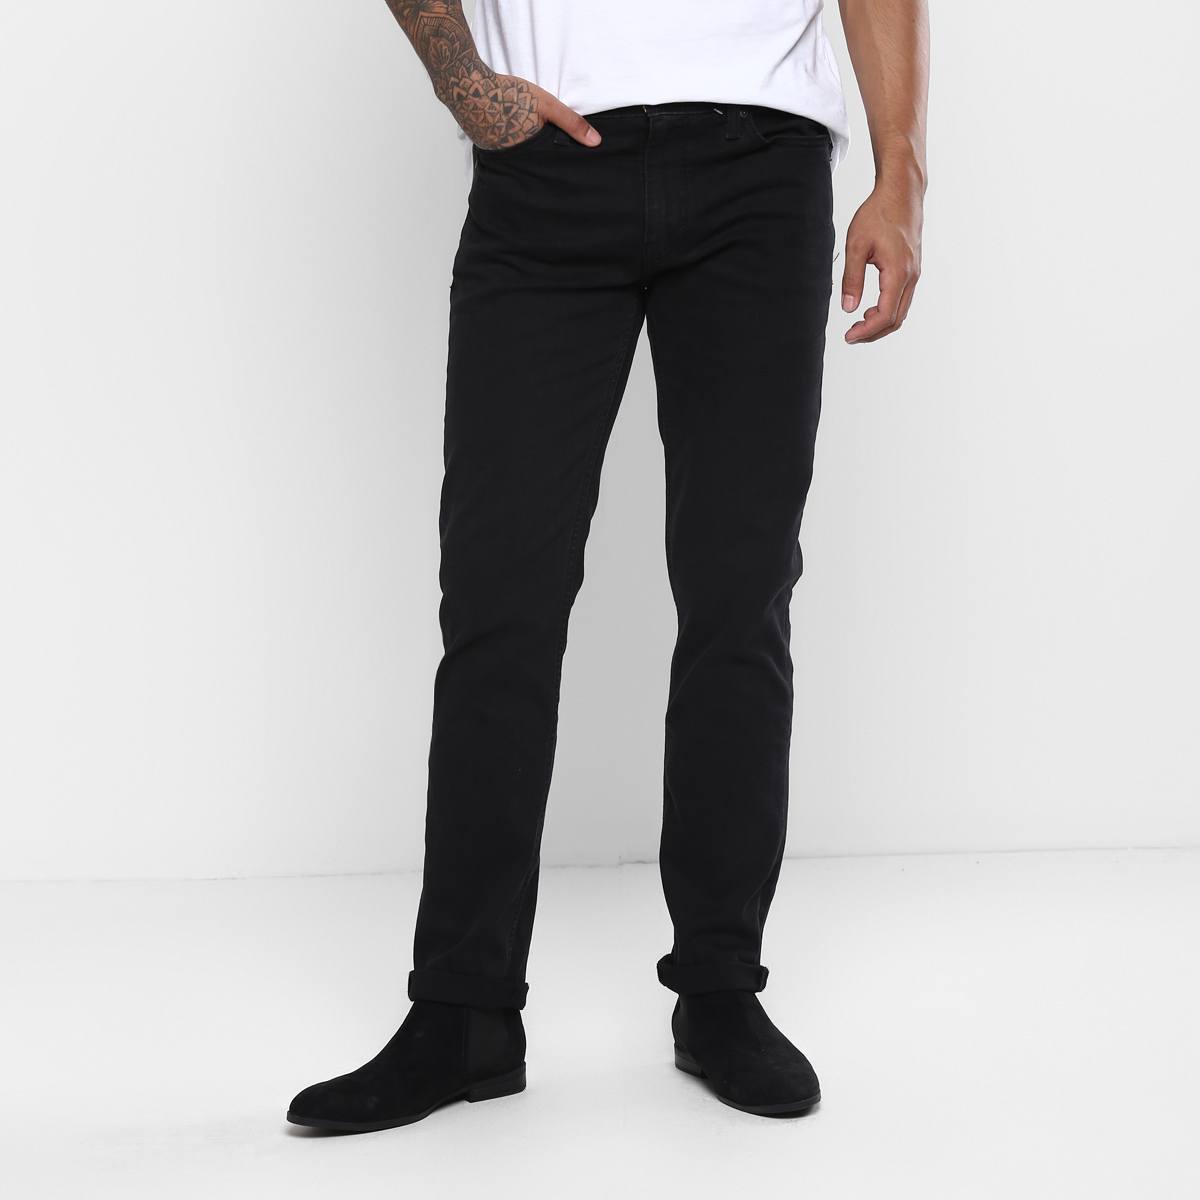 LEVIS MEN Single Length Jeans 86665-0000 Black 36